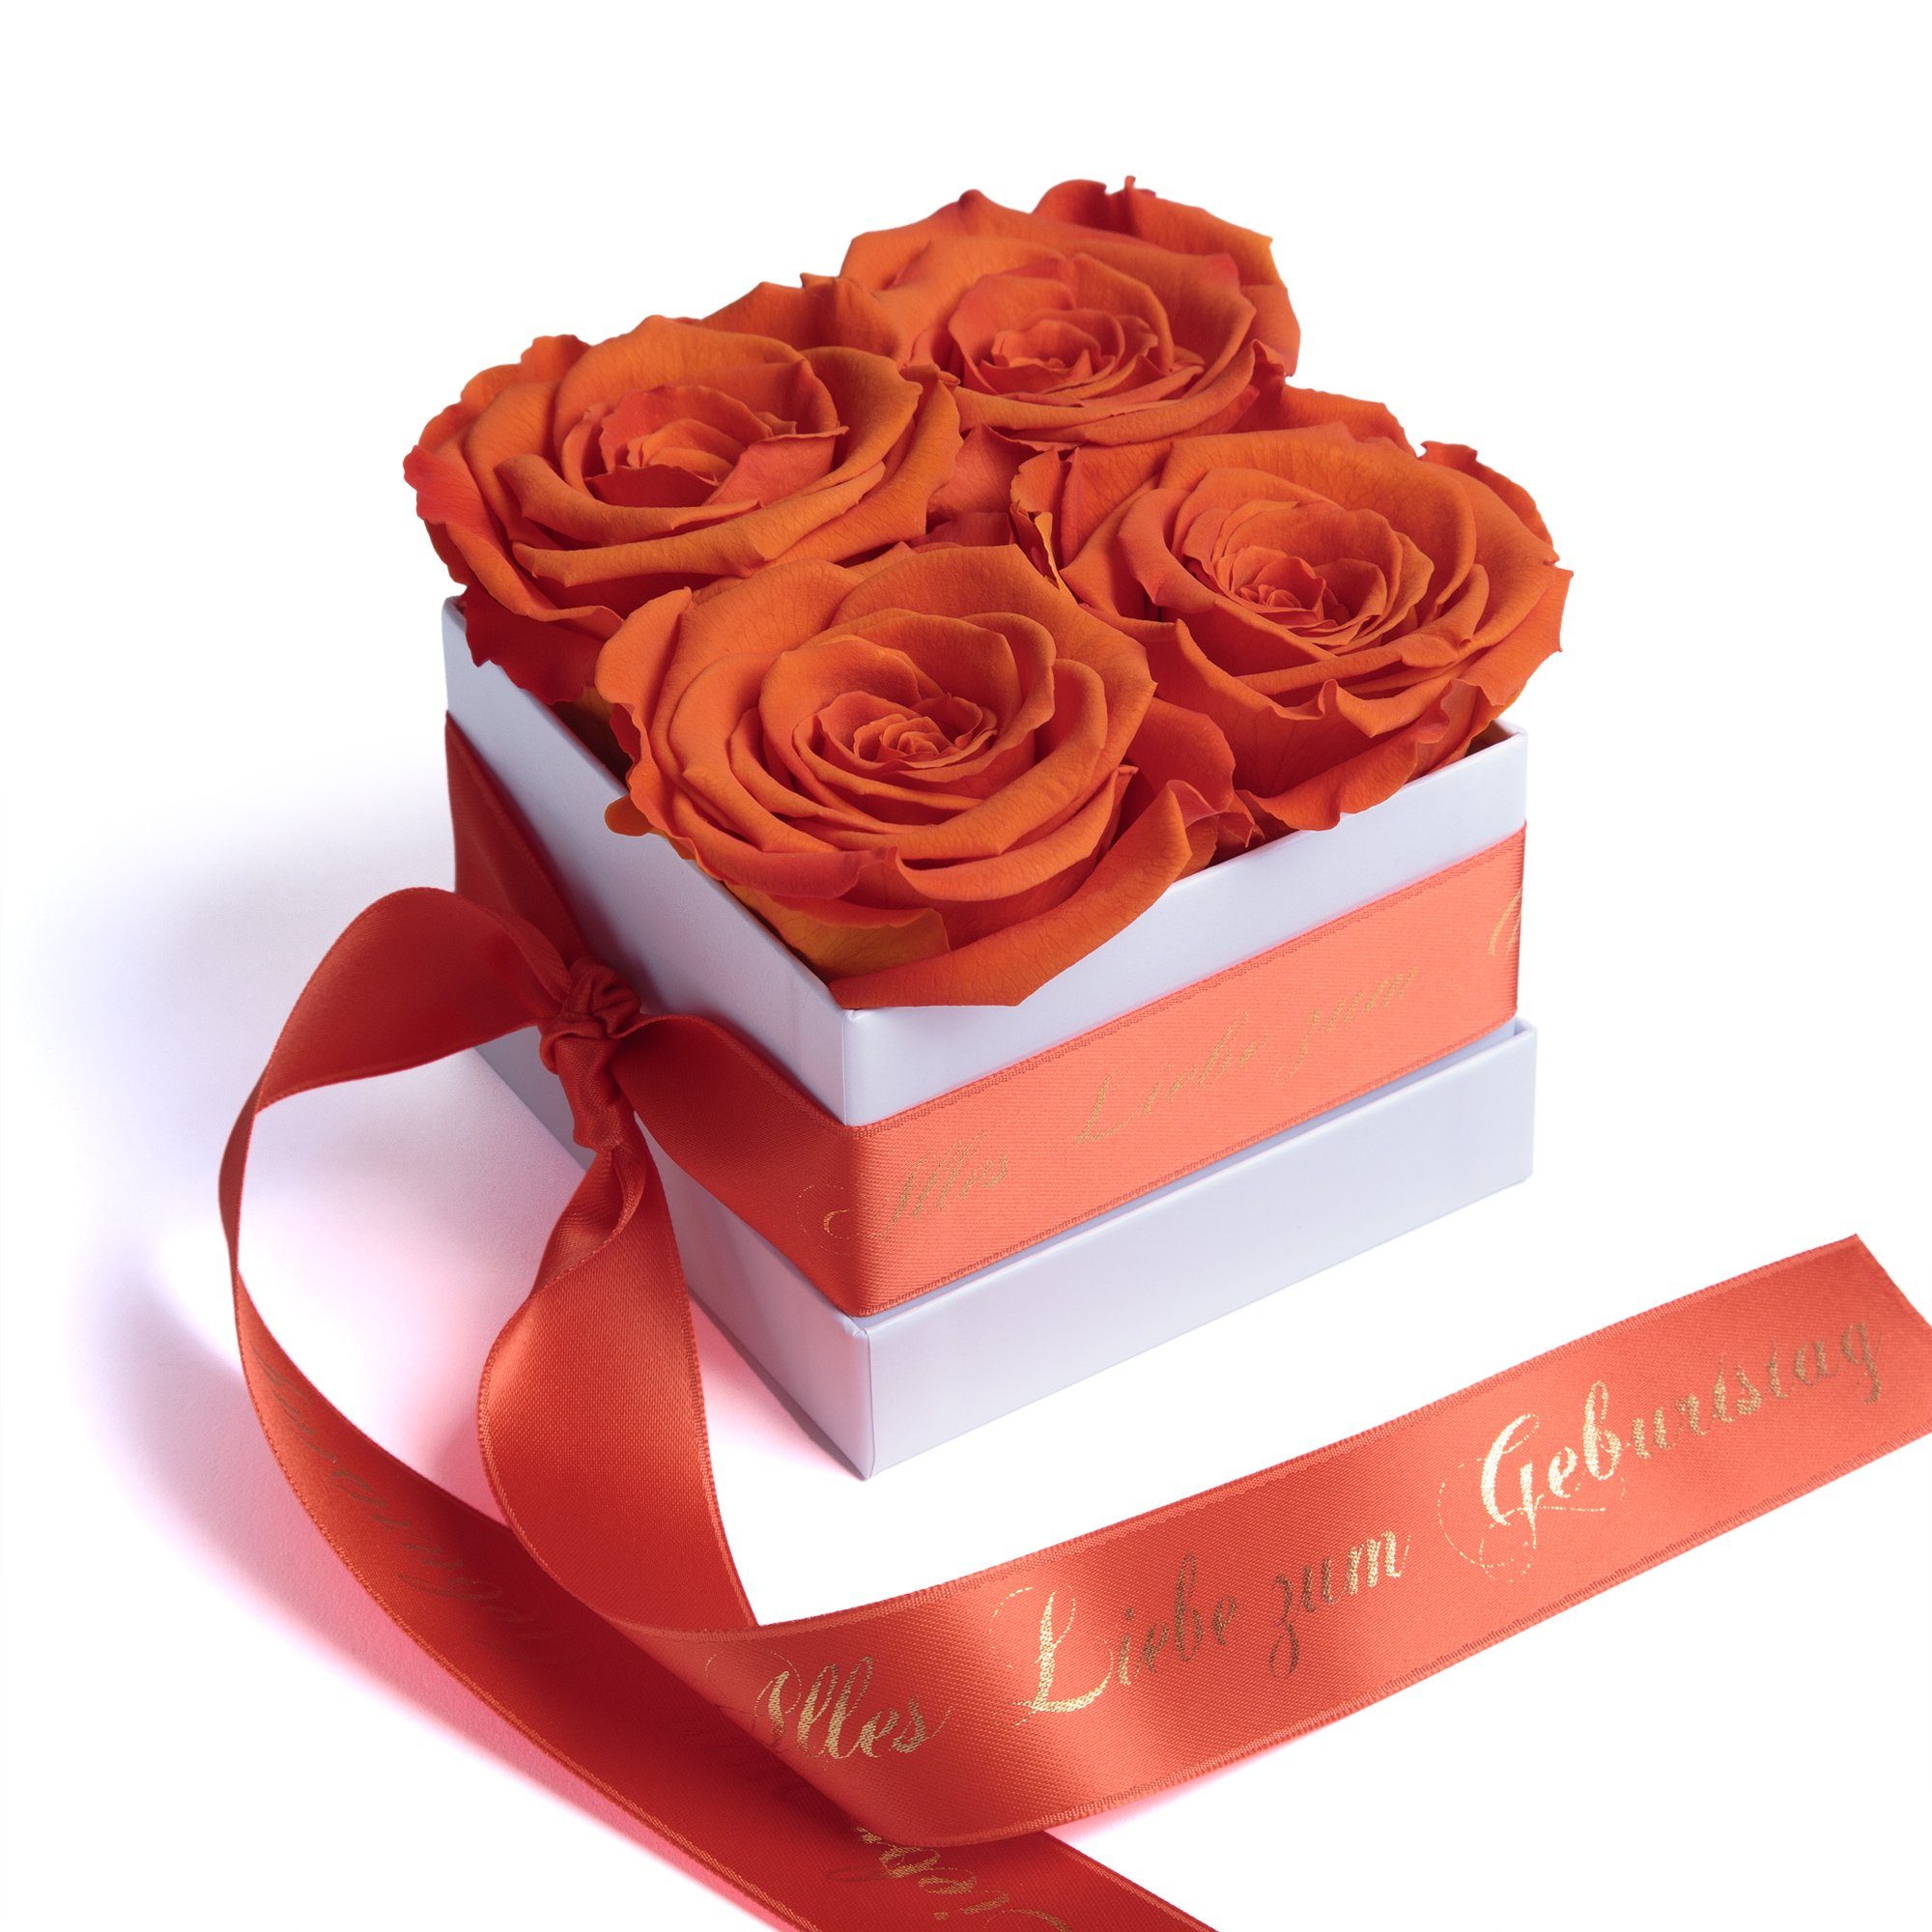 SCHULZ bis haltbar orange ROSEMARIE Liebe Jahre Geschenk, Rose Blumen Heidelberg Rosenbox Infinity 3 Echte Geburtstag Dekoobjekt zu zum Alles